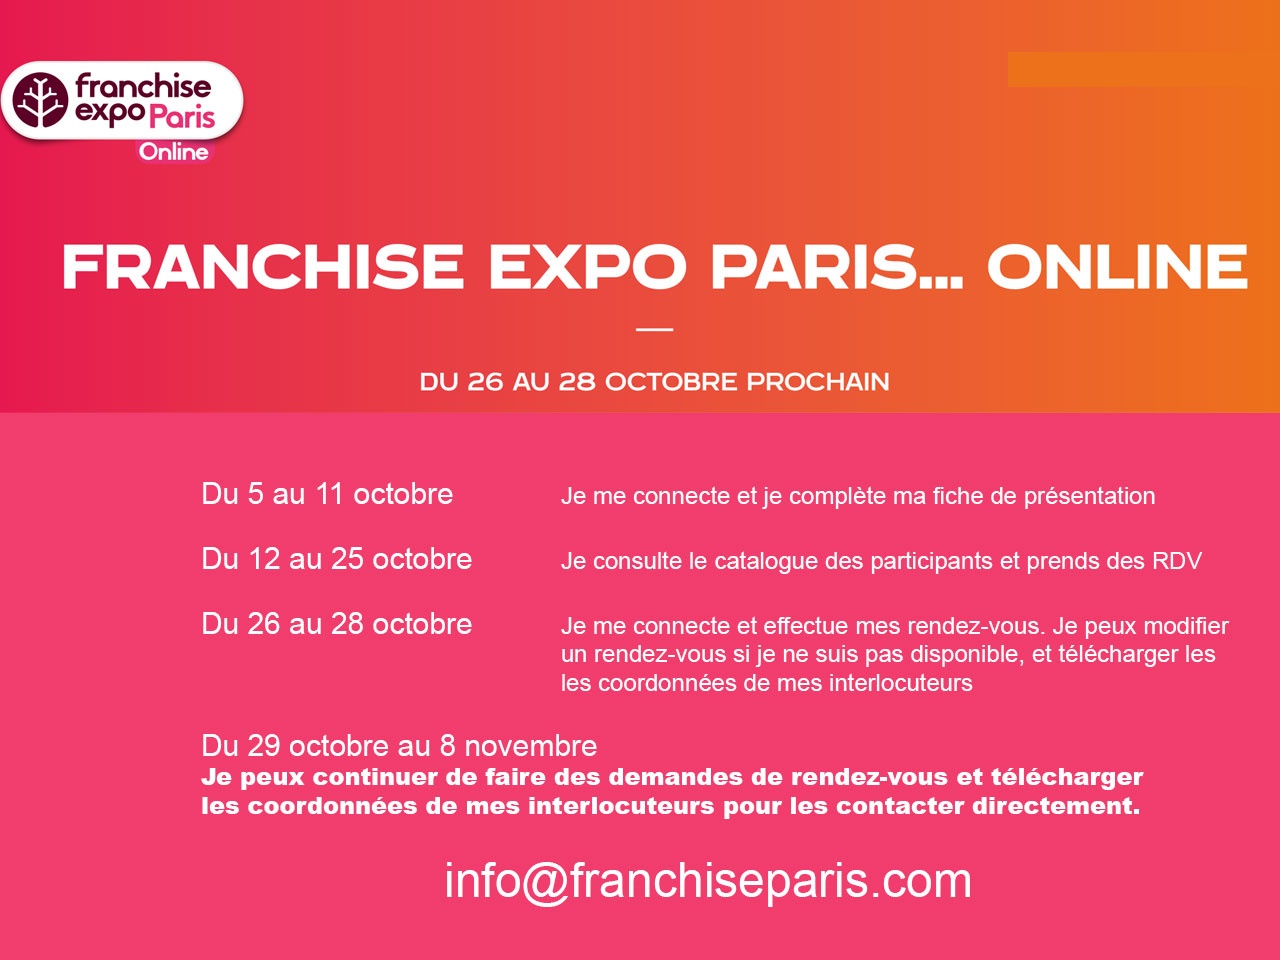 FRANCHISE EXPO PARIS…ONLINE c’est du 26 au 28 octobre prochain !